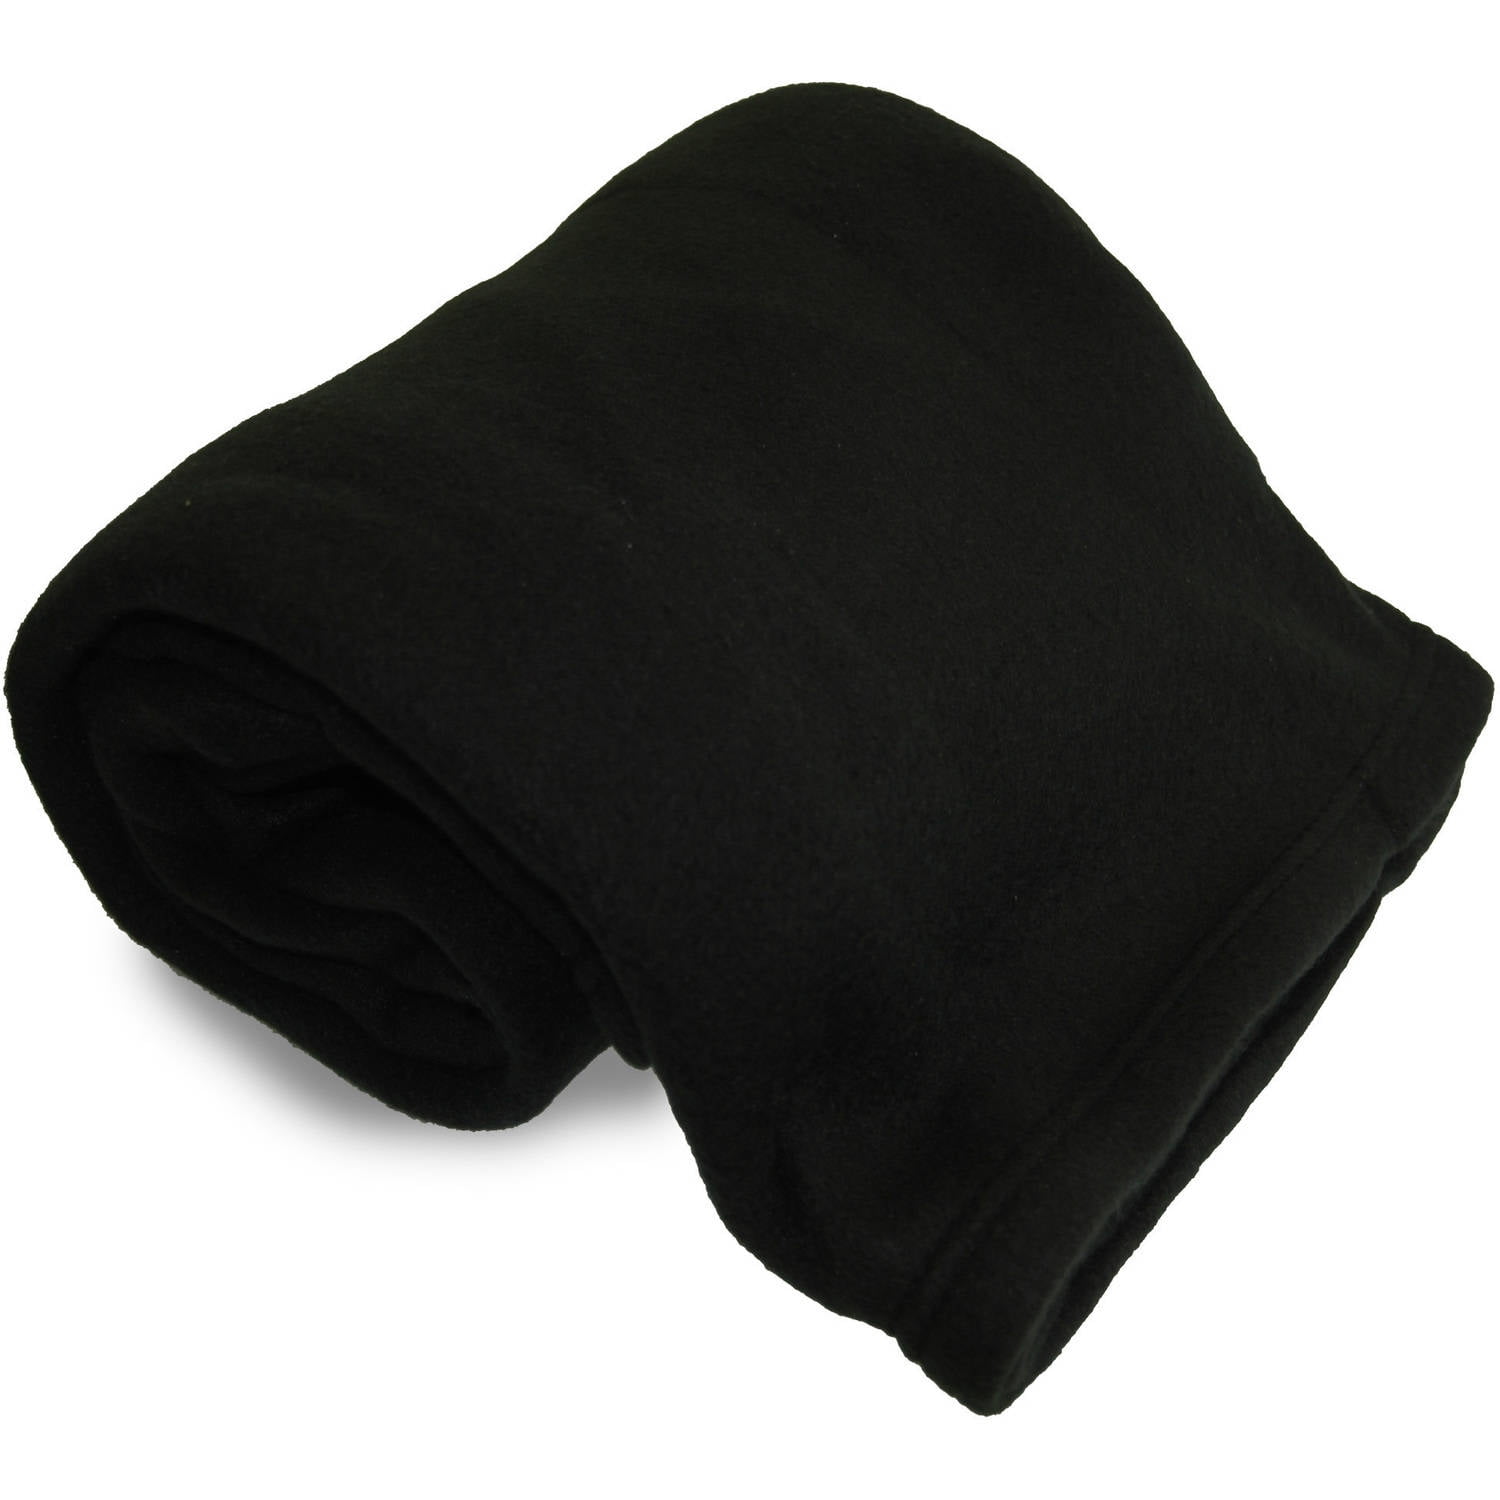 World's Best Blanket Black Solid Fleece Throw, 60